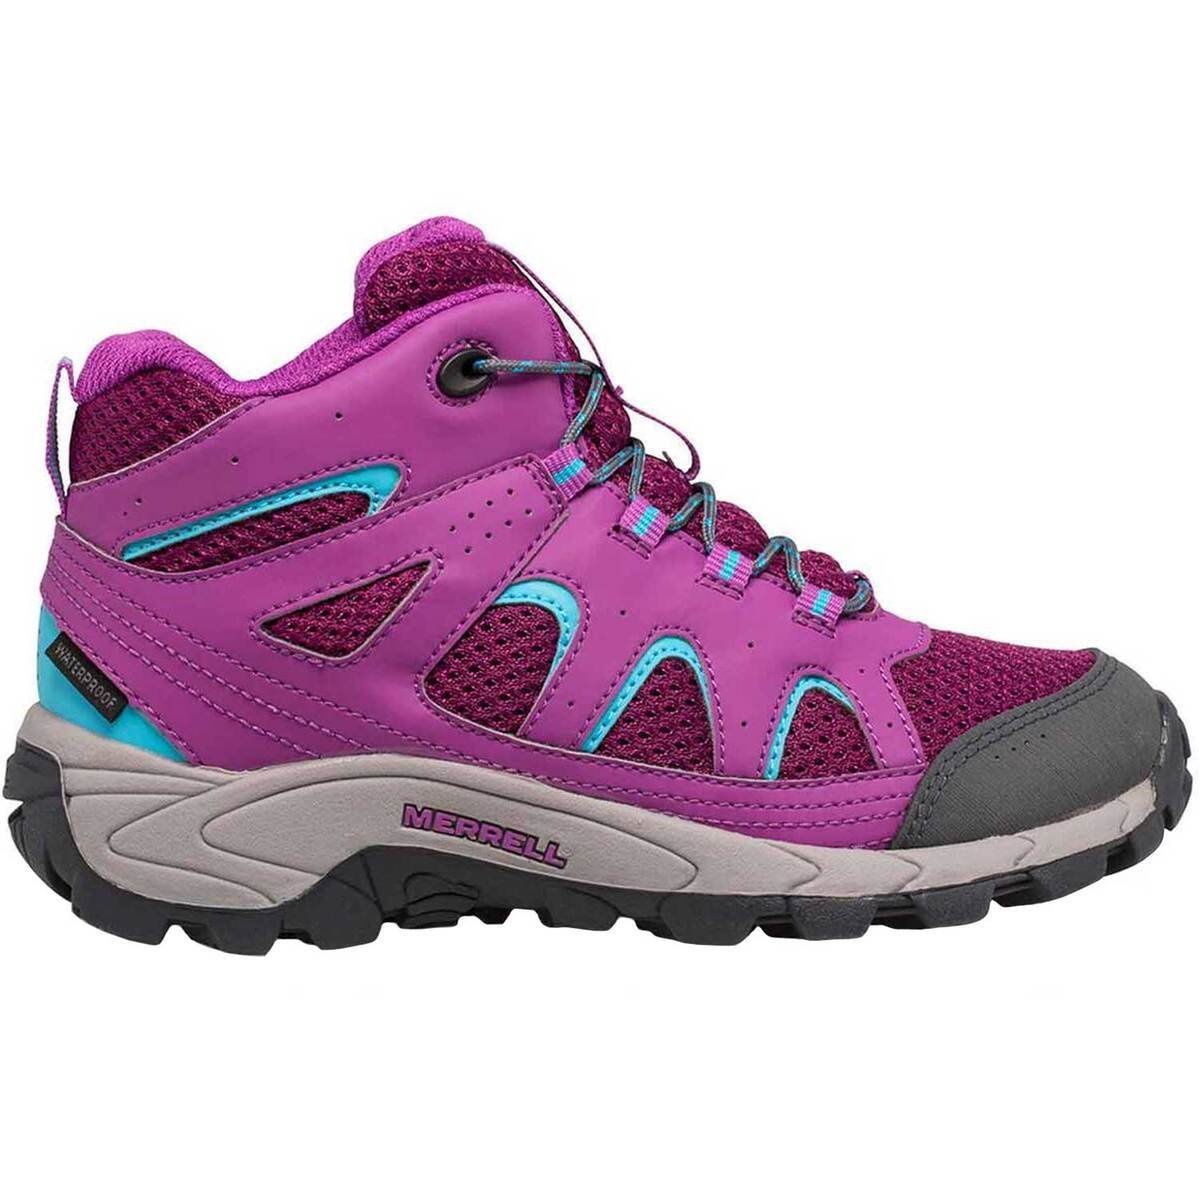 Merrell Girls' Oakcreek Waterproof Mid Hiking Boots - Berry - Size 3 ...